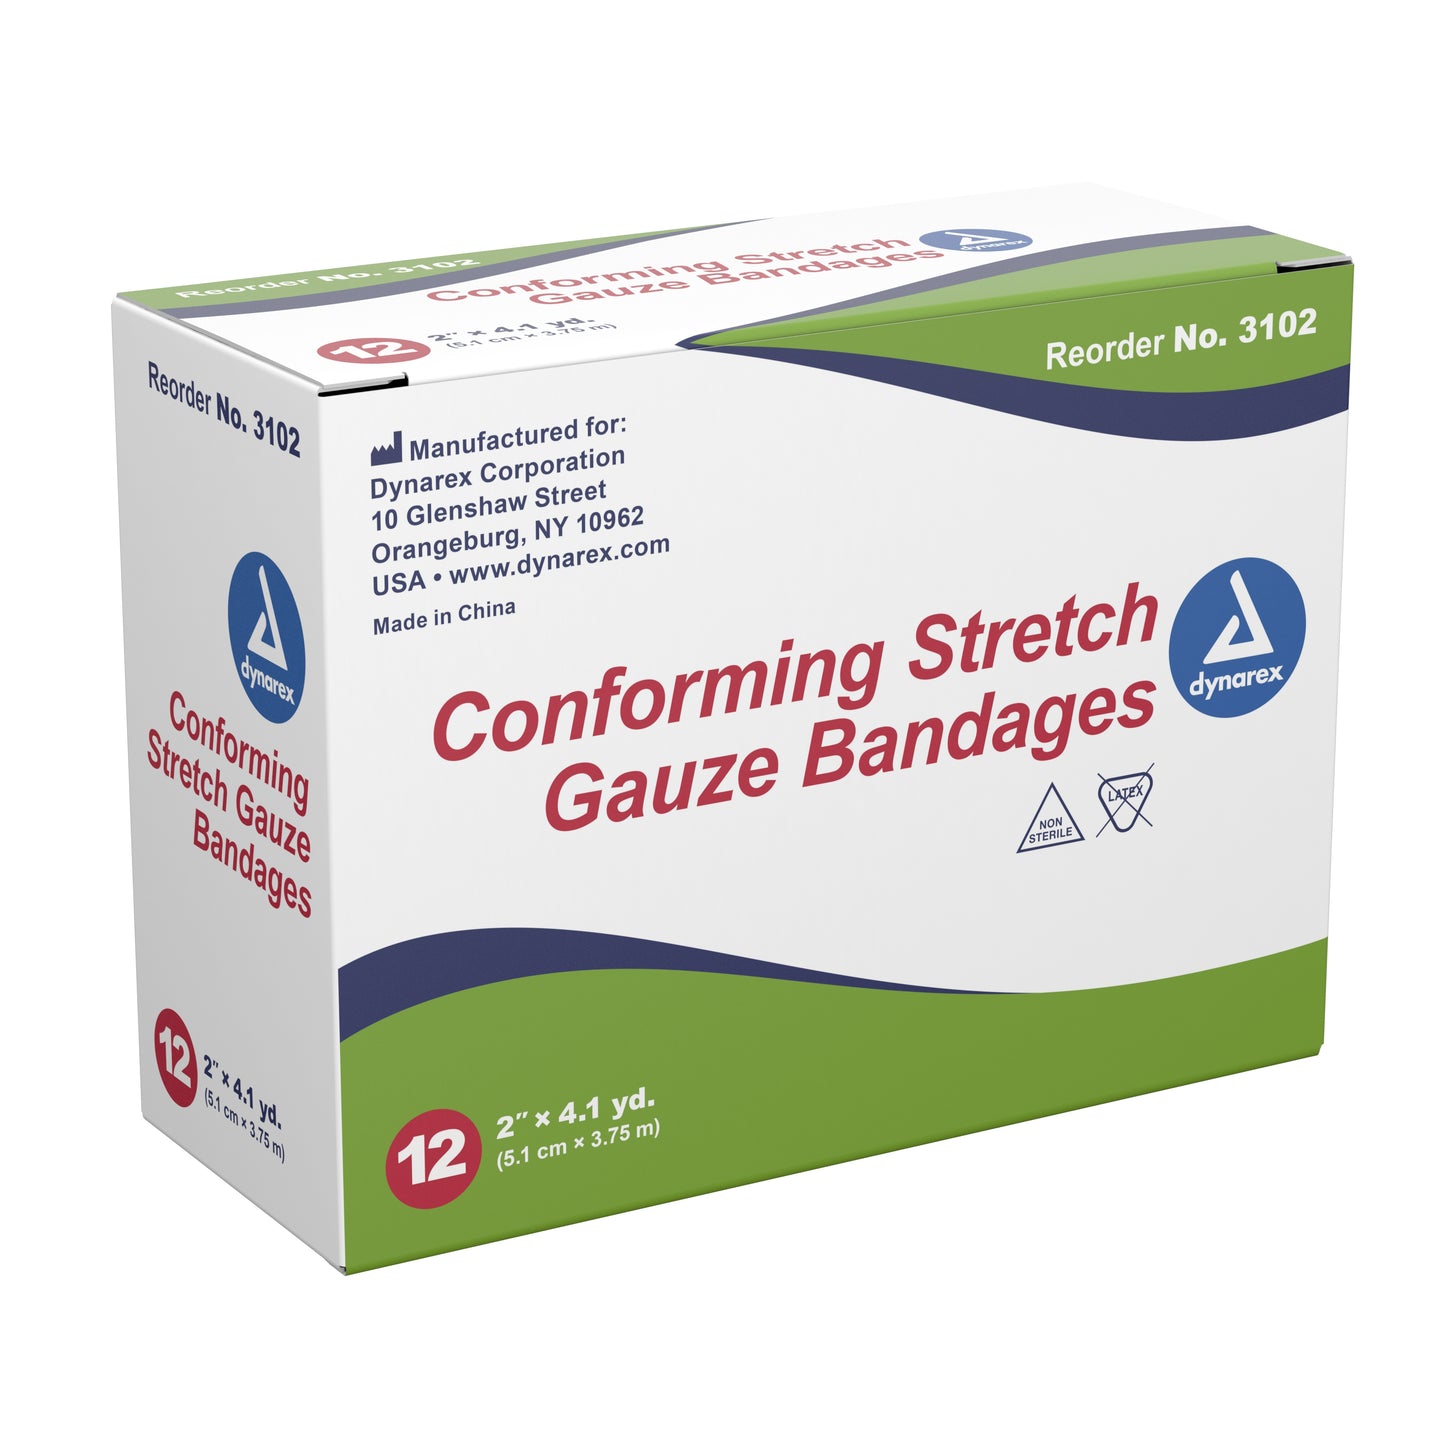 Dynarex Conforming Stretch Bandages, 2" x 4.1 yd., 12 ct.